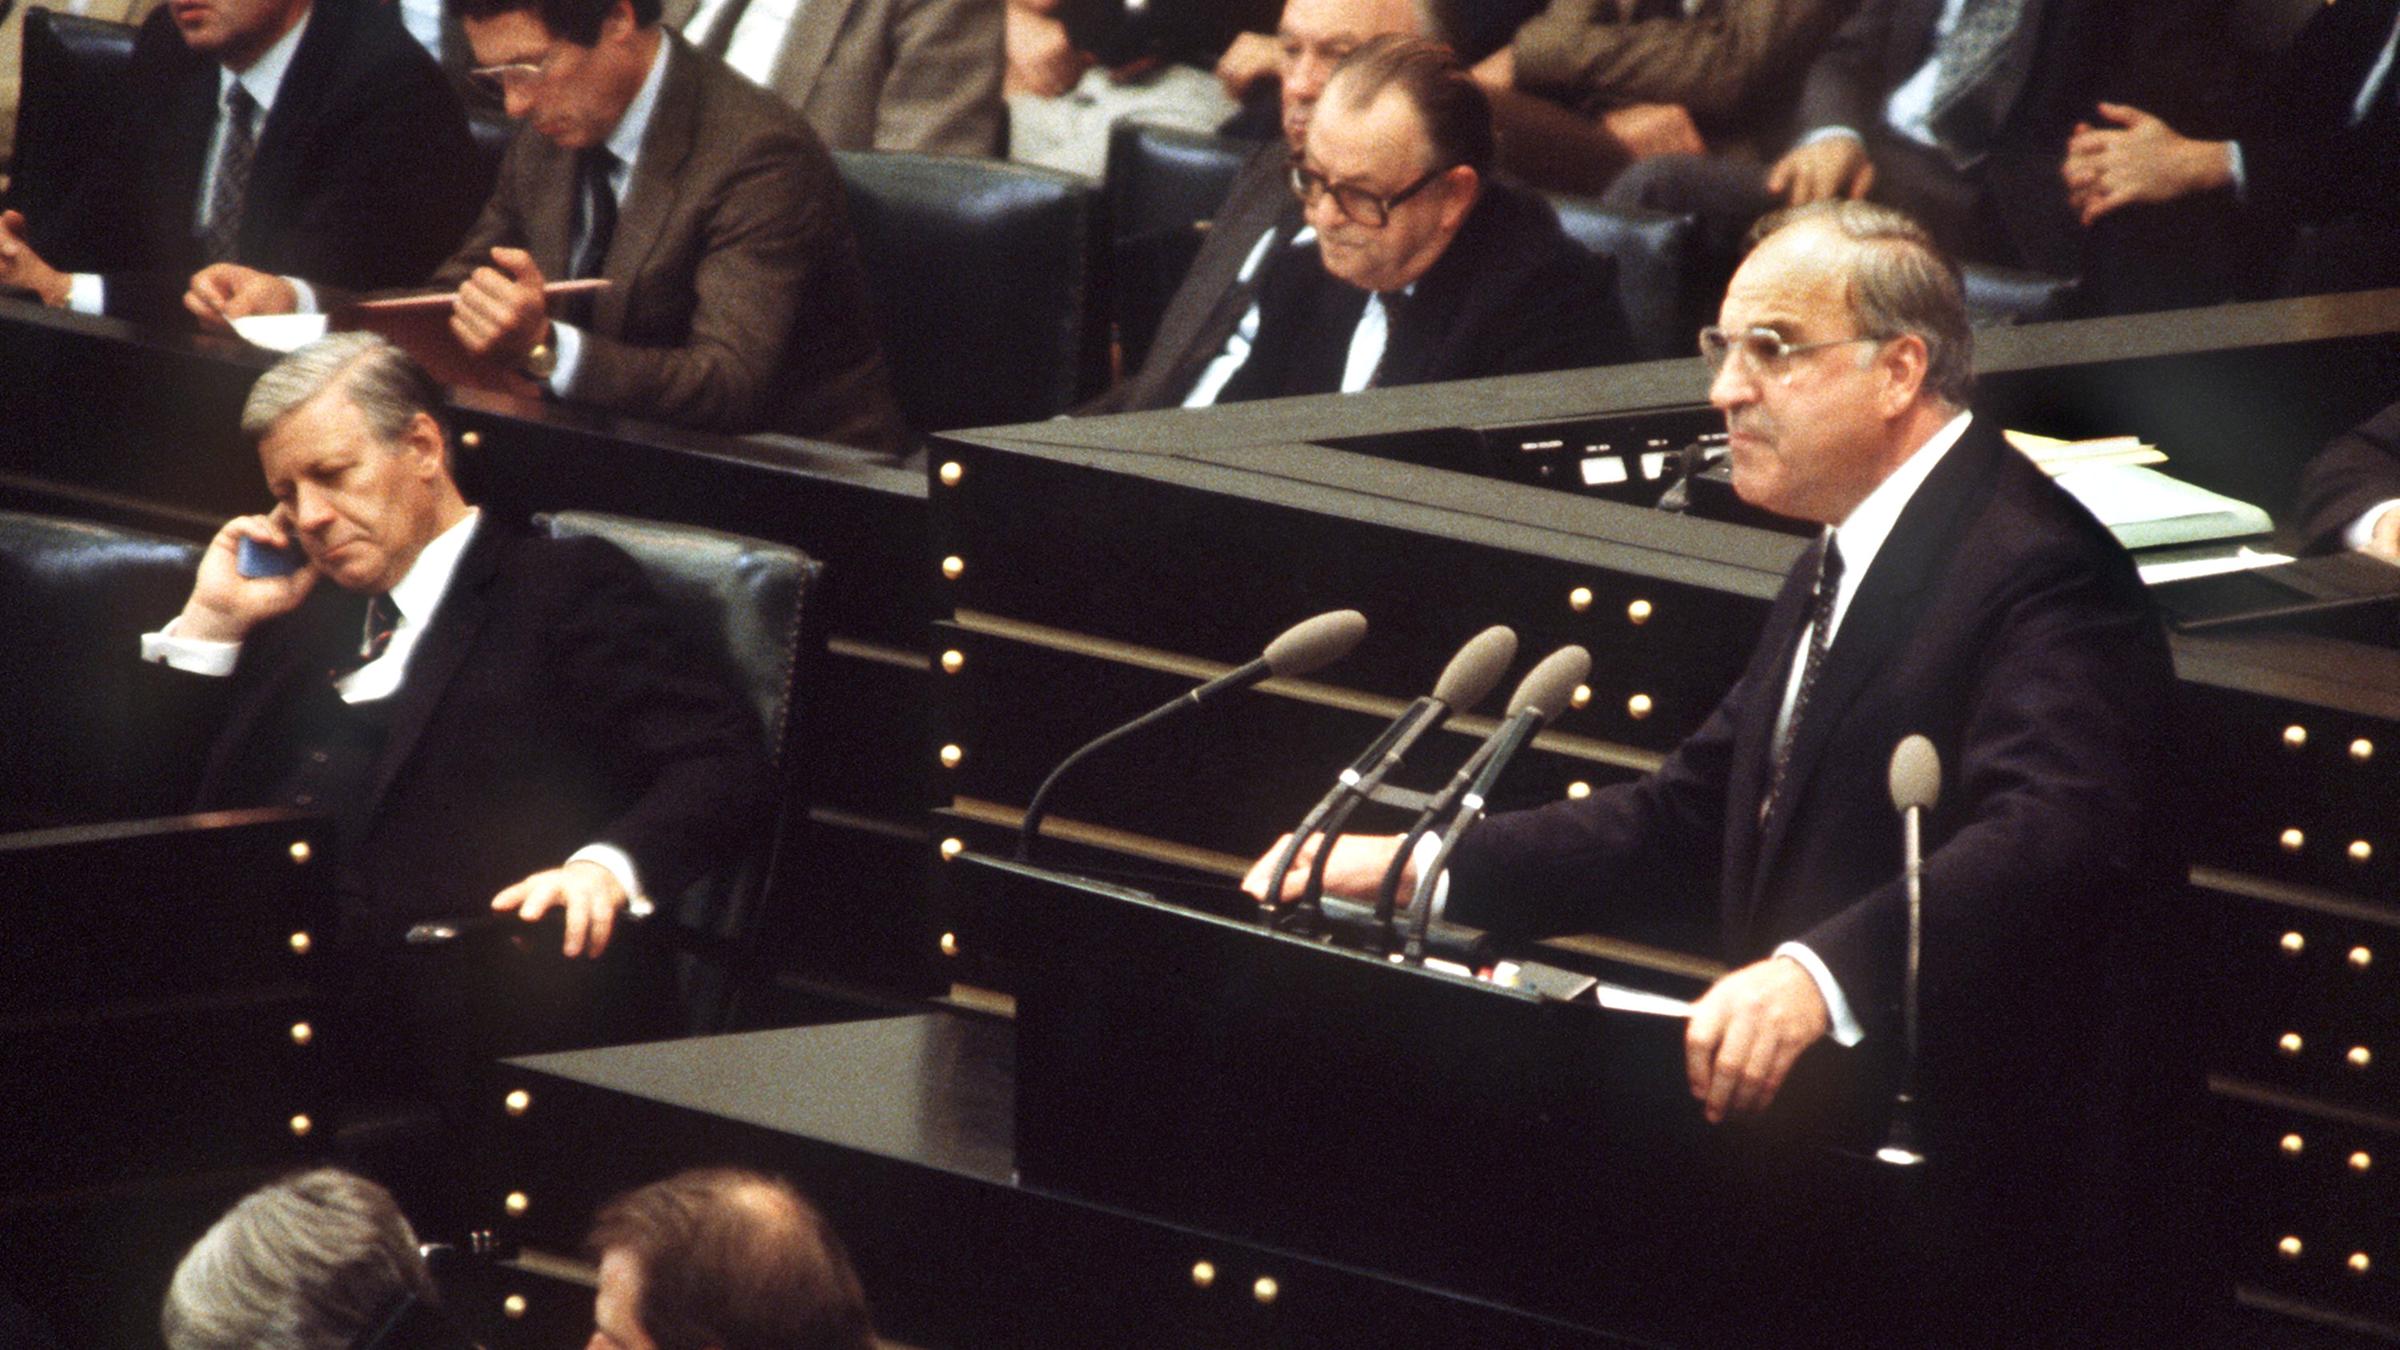 Archiv: Helmut Kohl spricht vor dem Misstrauensvotum im Bundestag 1982.